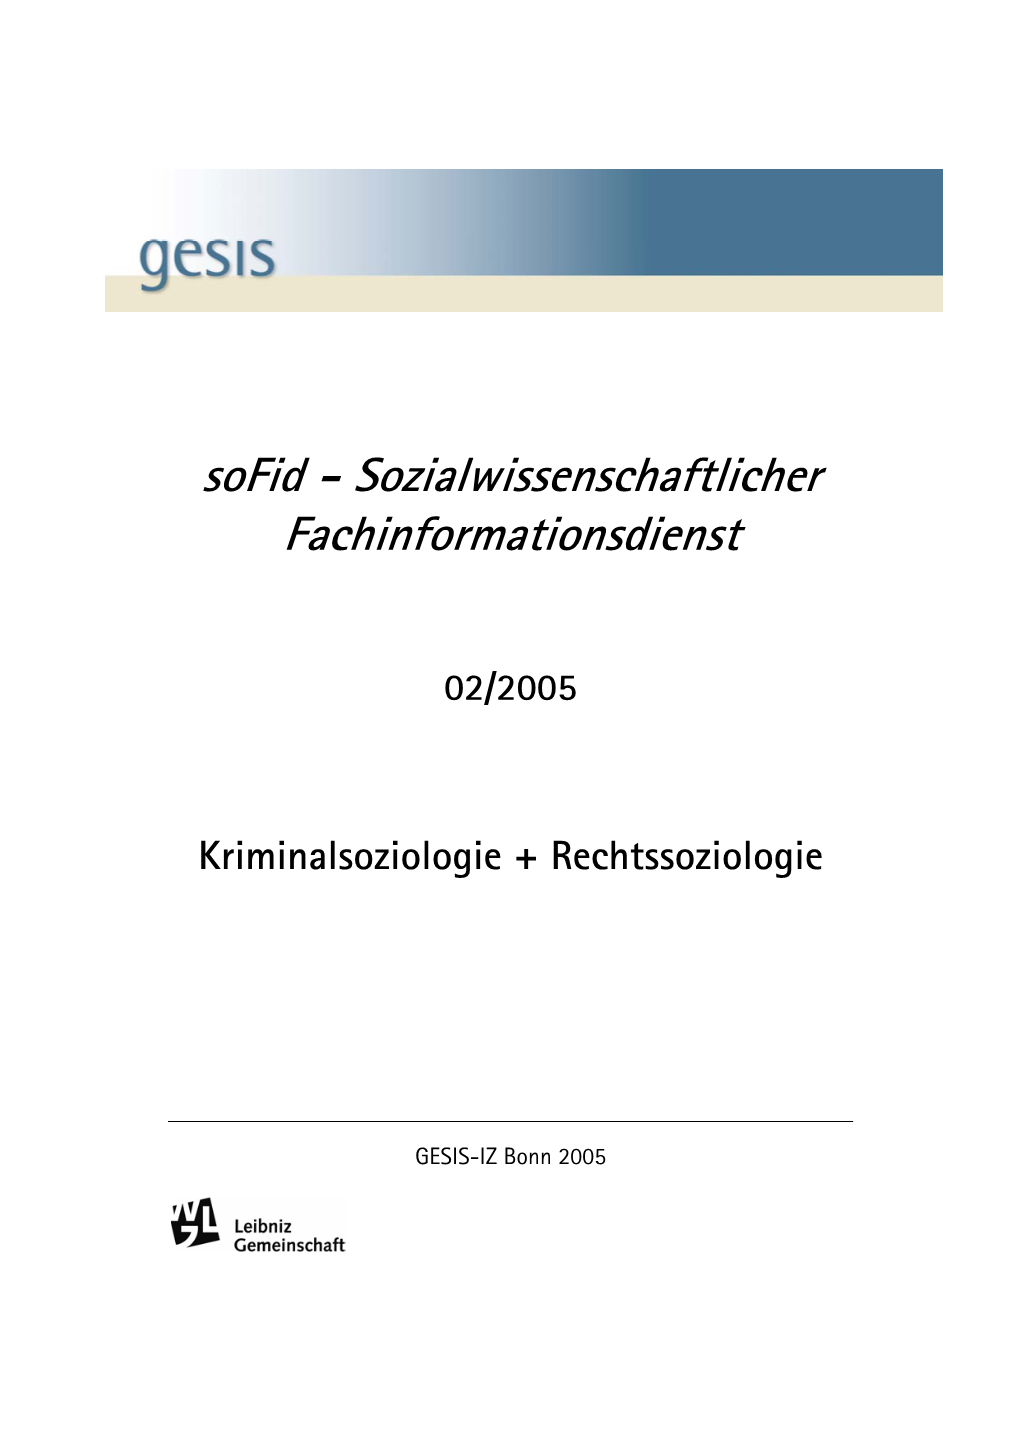 Sofid - Sozialwissenschaftlicher Fachinformationsdienst